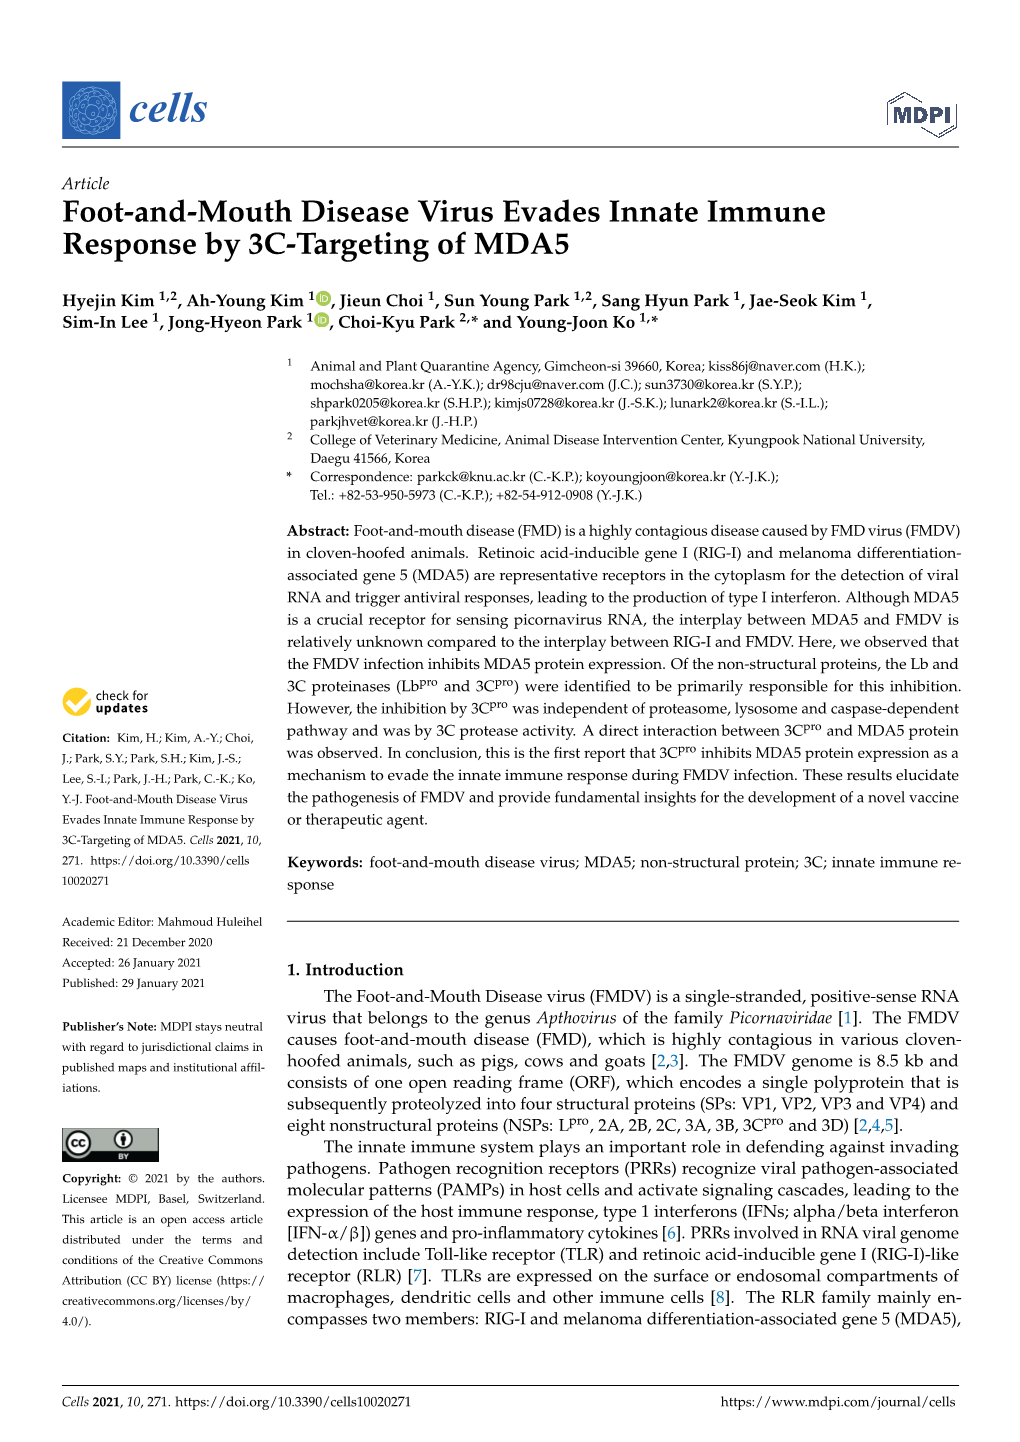 Foot-And-Mouth Disease Virus Evades Innate Immune Response by 3C-Targeting of MDA5